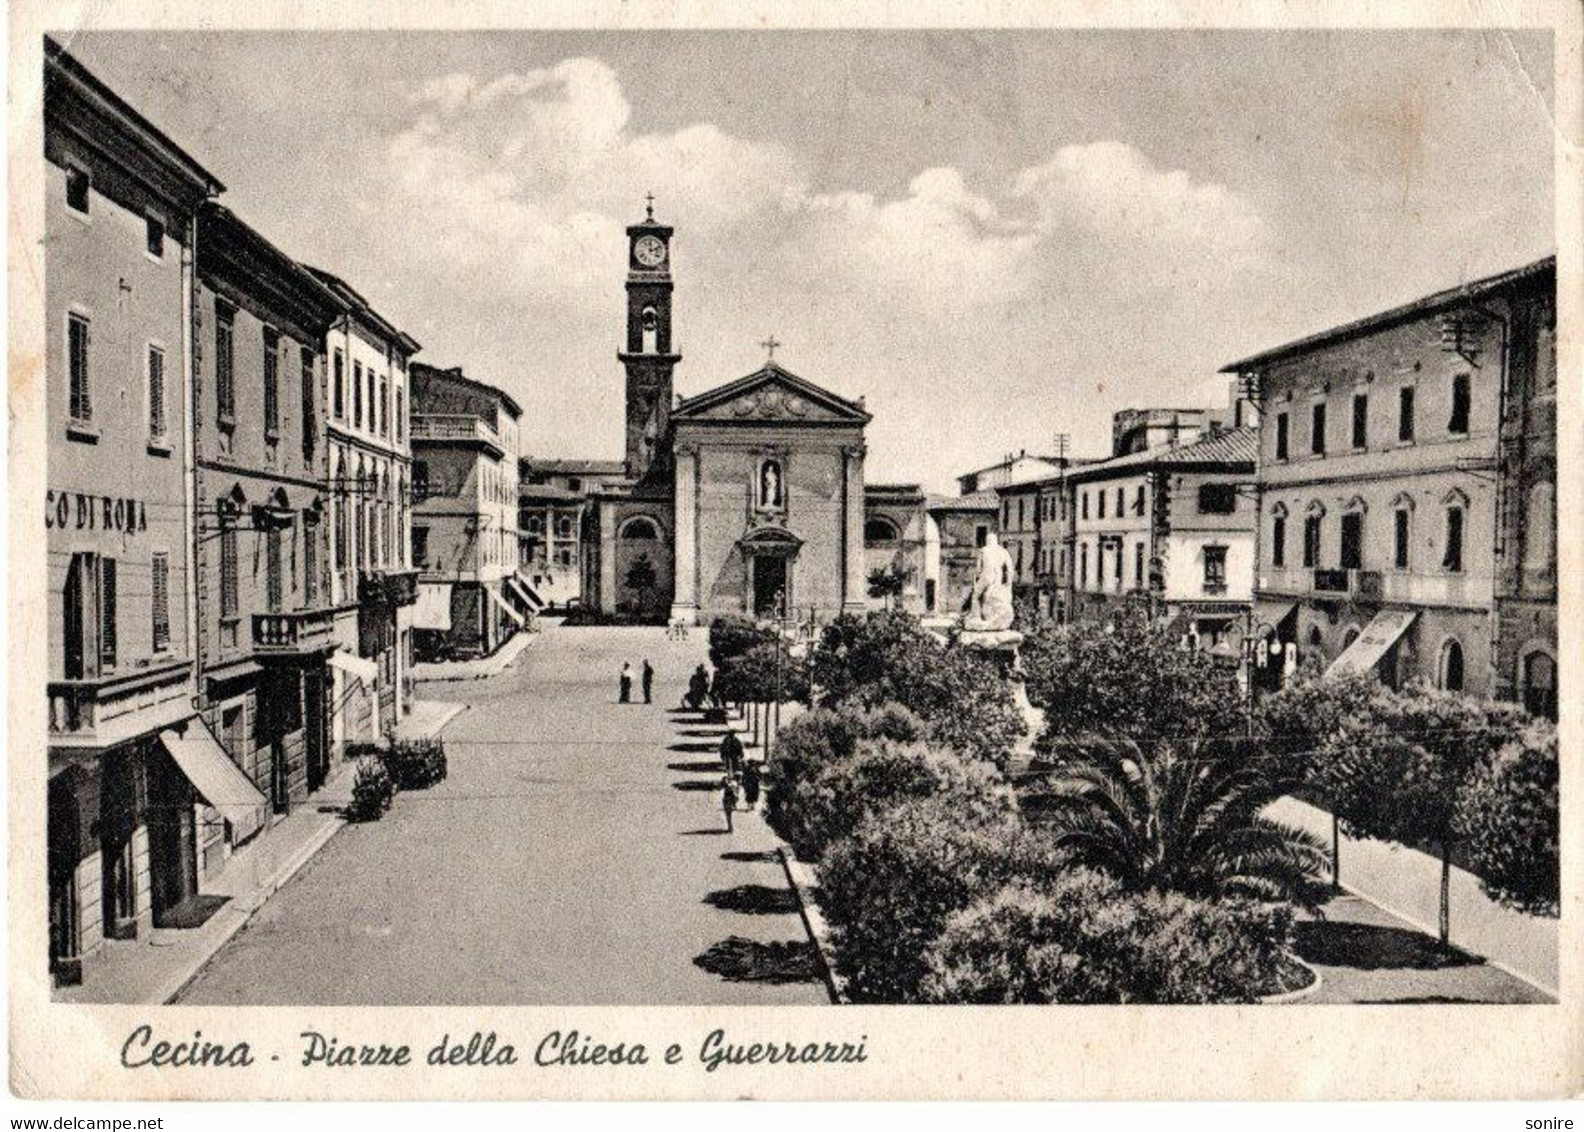 CECINA  - PIAZZE DELLA CHIESA E GUERRAZZI (LIVORNO) ED. VENTURI - BOLLO FRATELLANZA ARMI - VG 1941 FG - 6605 - Livorno